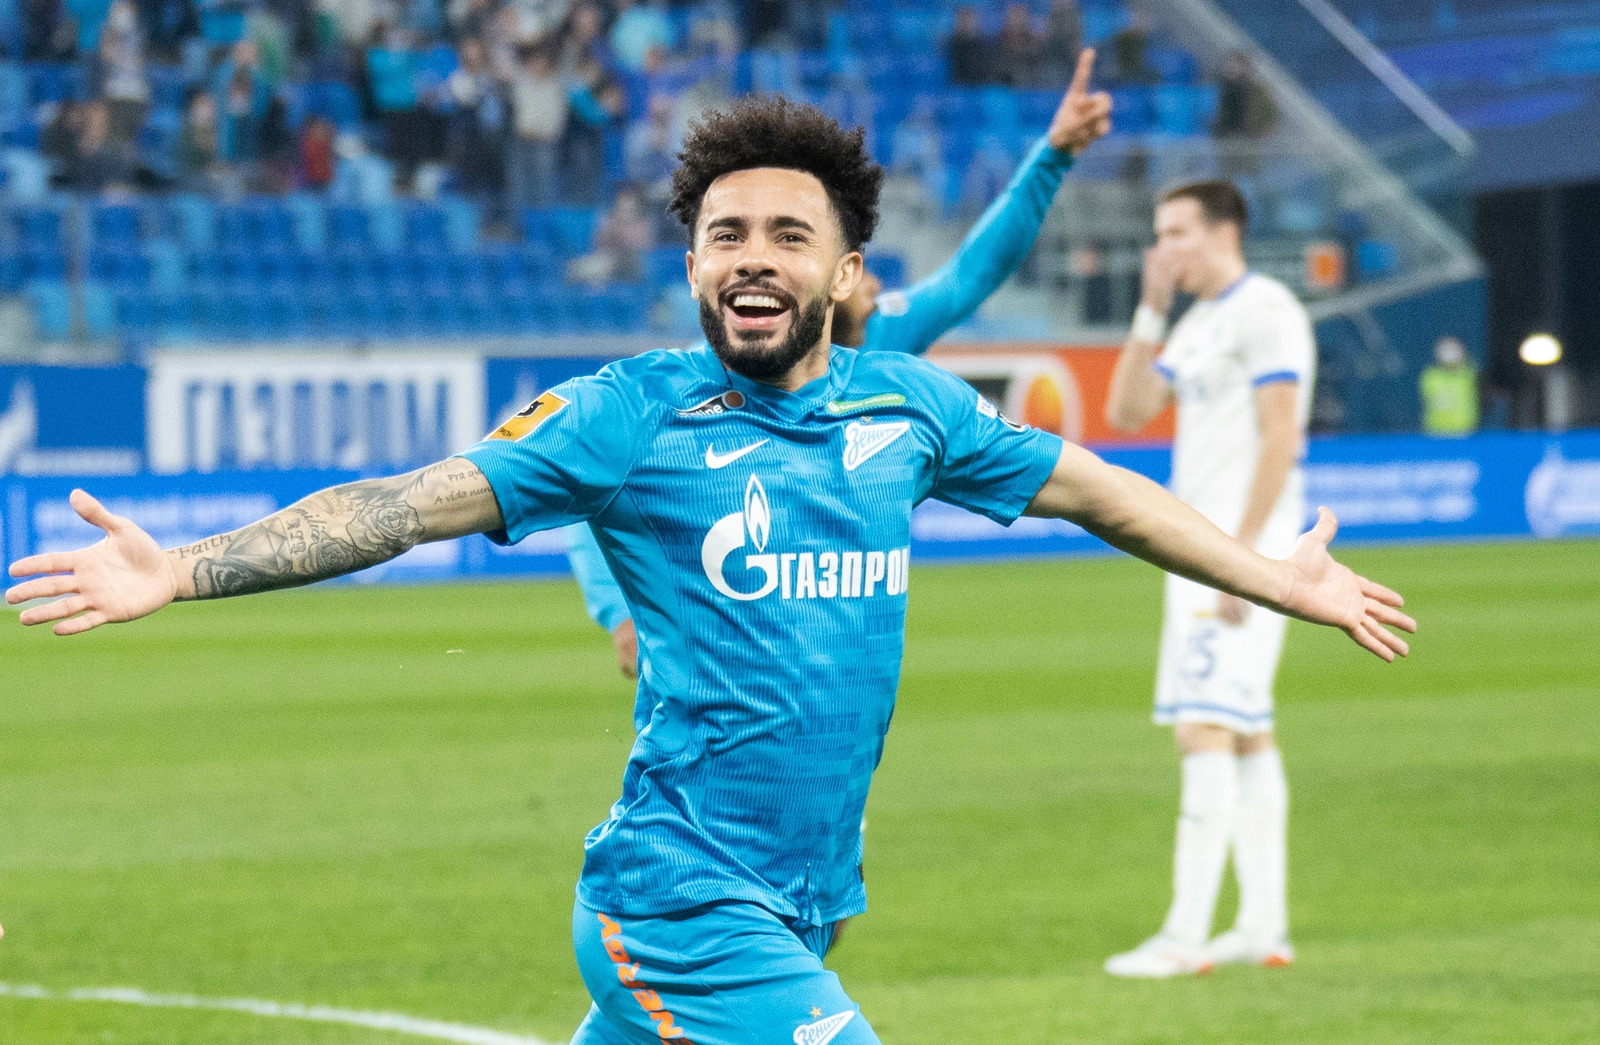 Wendel dá assistência, Zenit bate Spartak Moscou e fecha 2020 na liderança  do Campeonato Russo